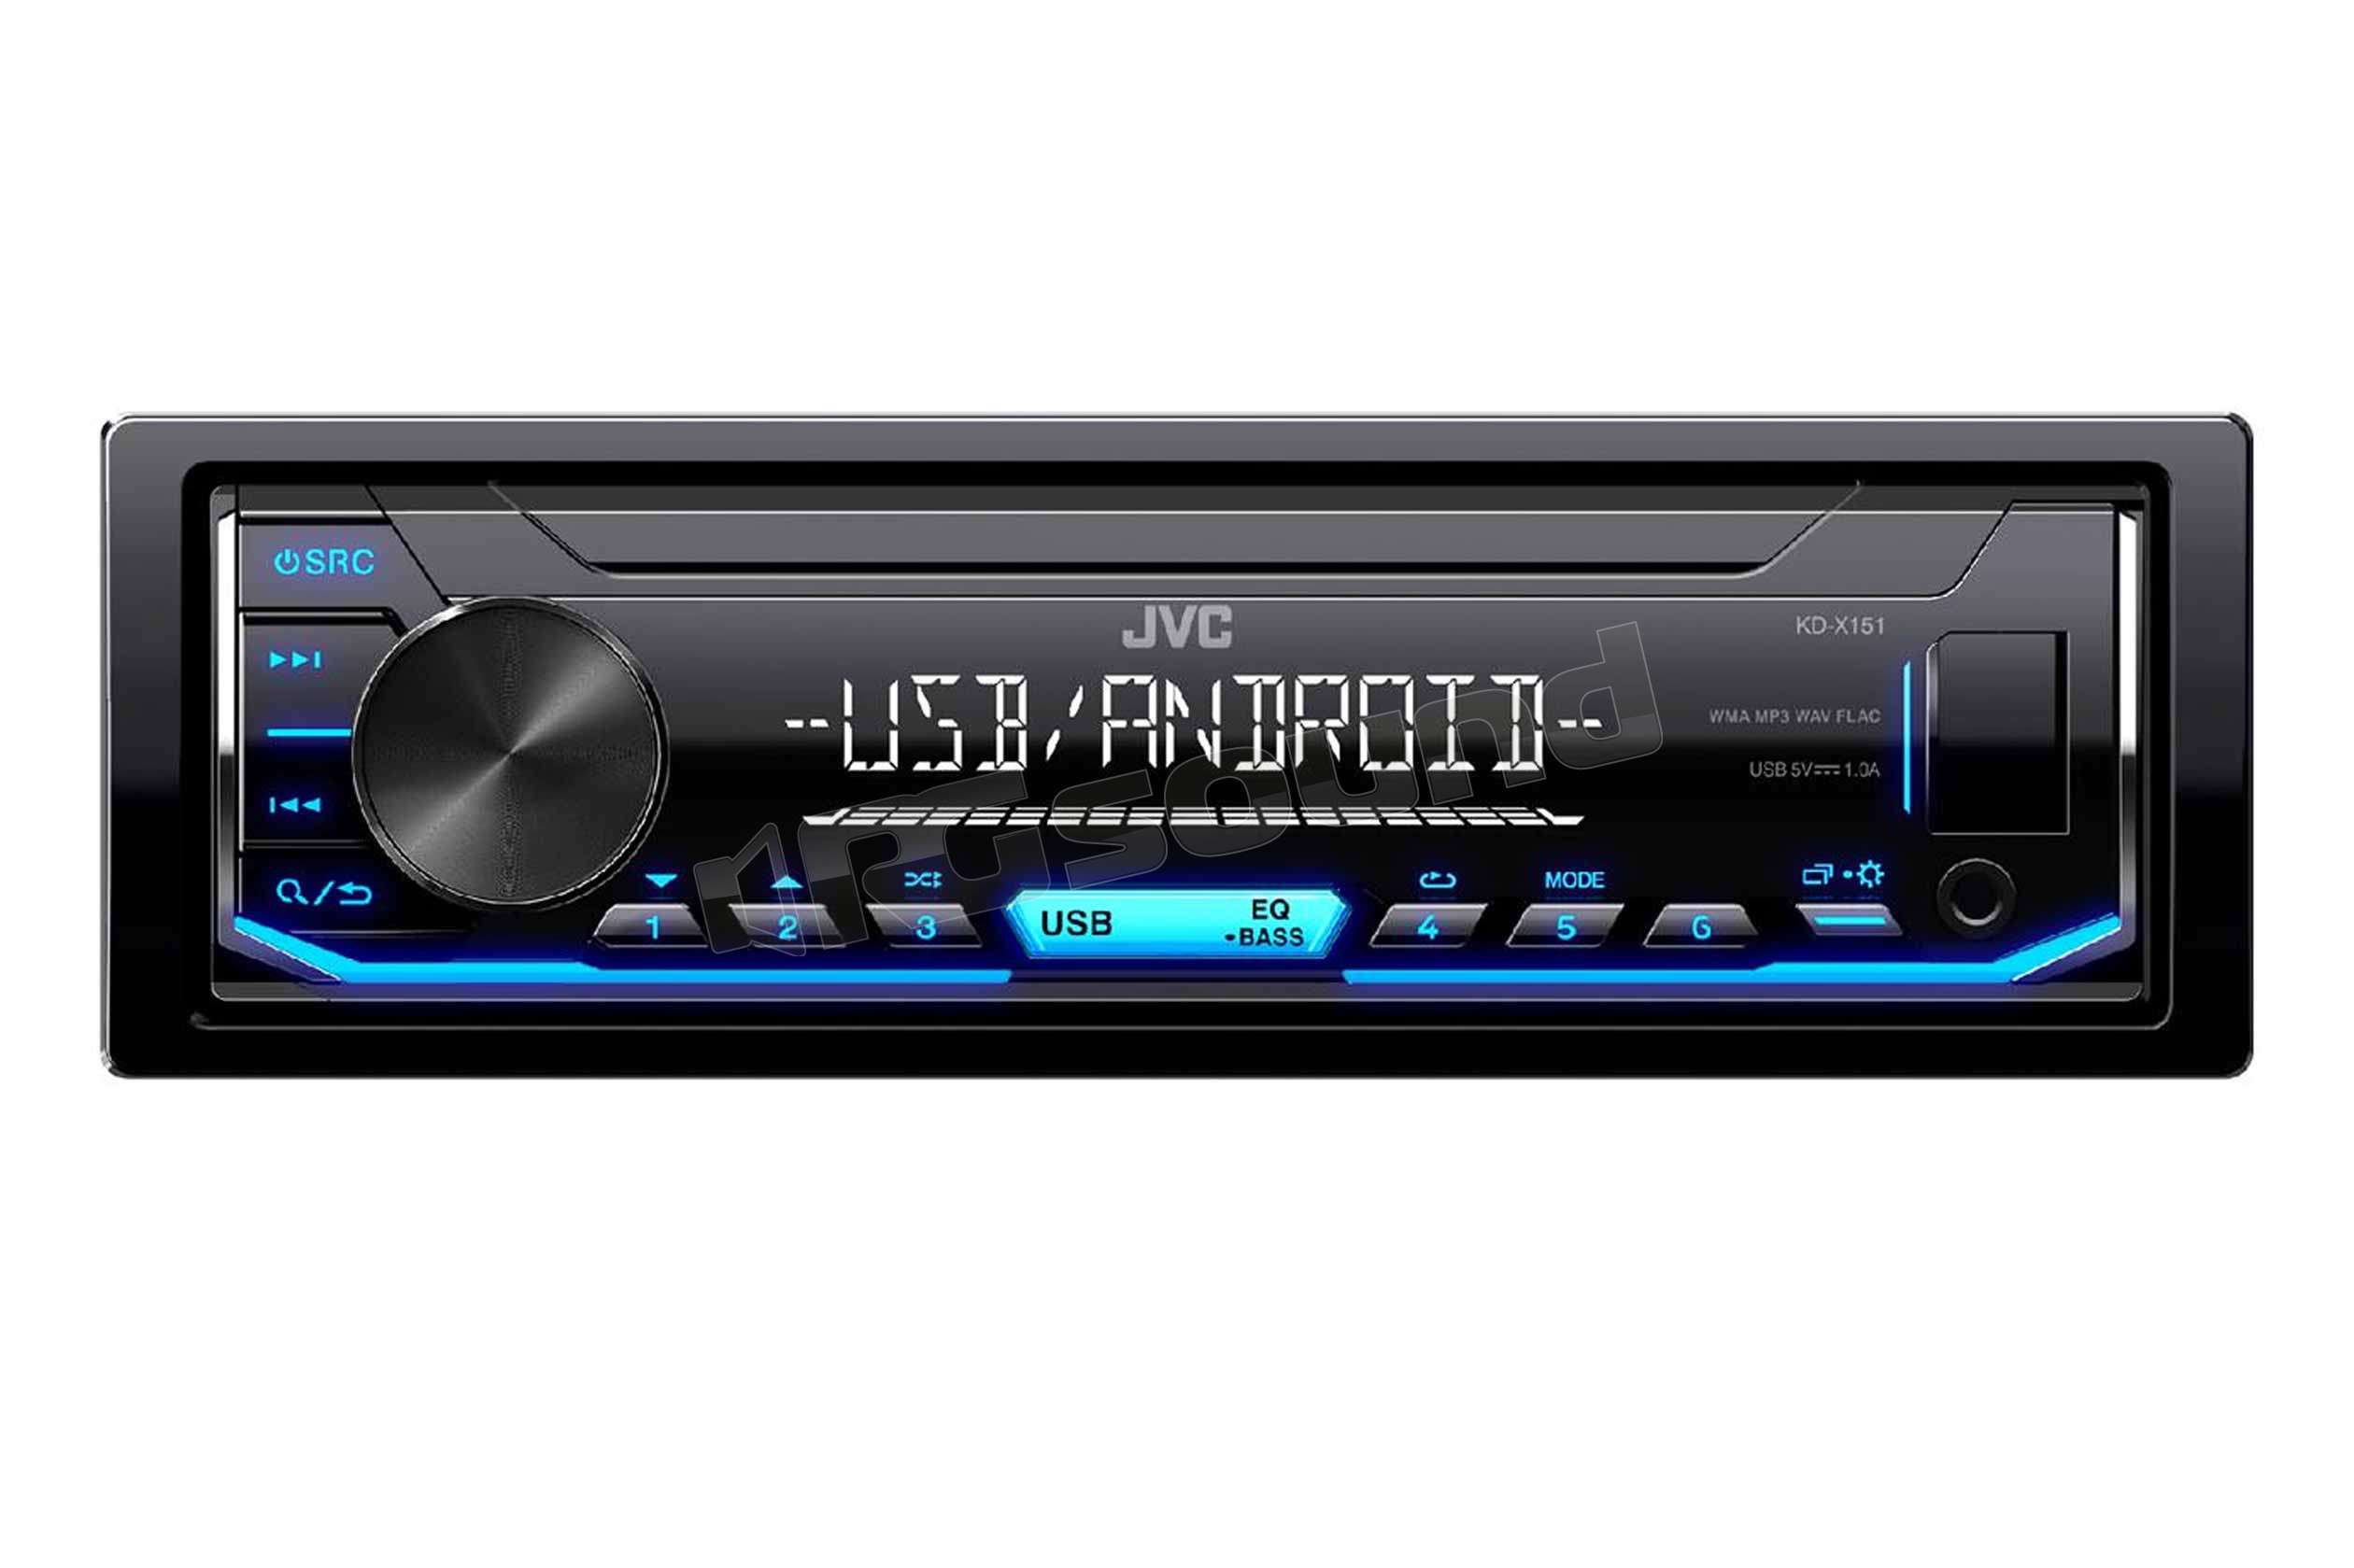 USB Android 4x50Watt Einbauset für Toyota Yaris P1 2003- JUST SOUND best choice for caraudio Einbauzubehör MP3 Autoradio Radio JVC KD-X151 